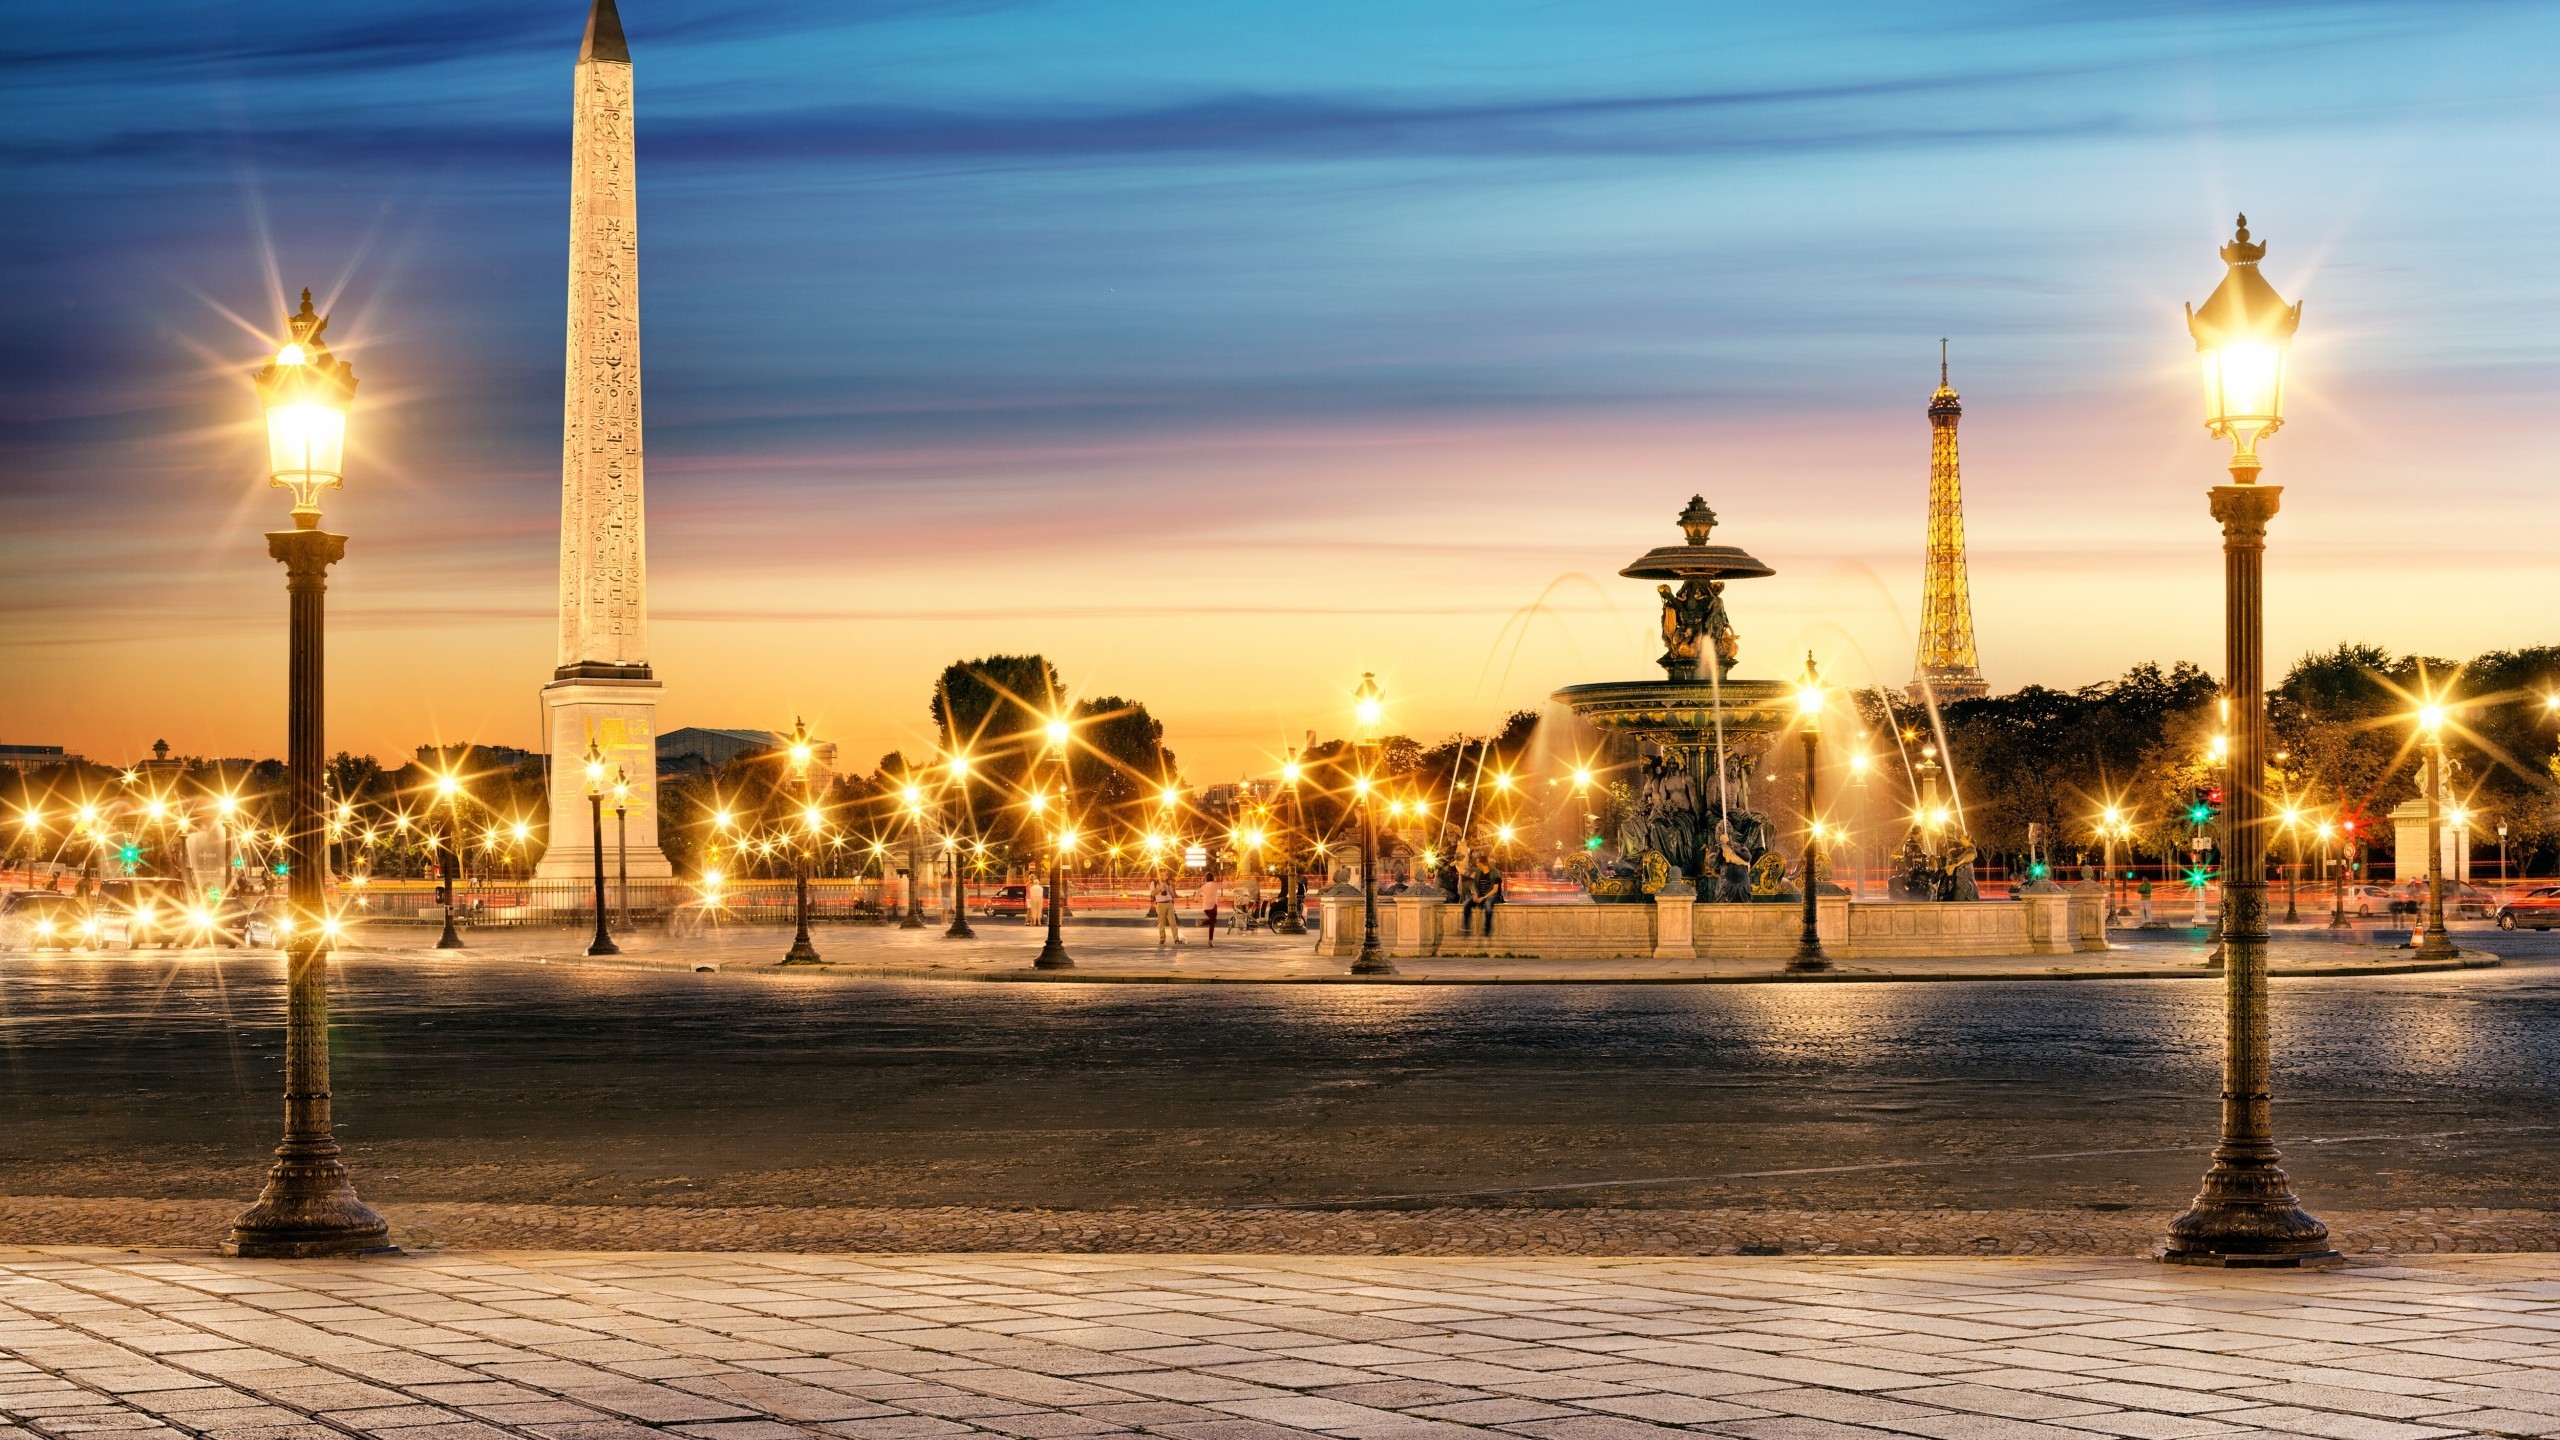 The Luxor Obelisk Paris for 2560x1440 HDTV resolution